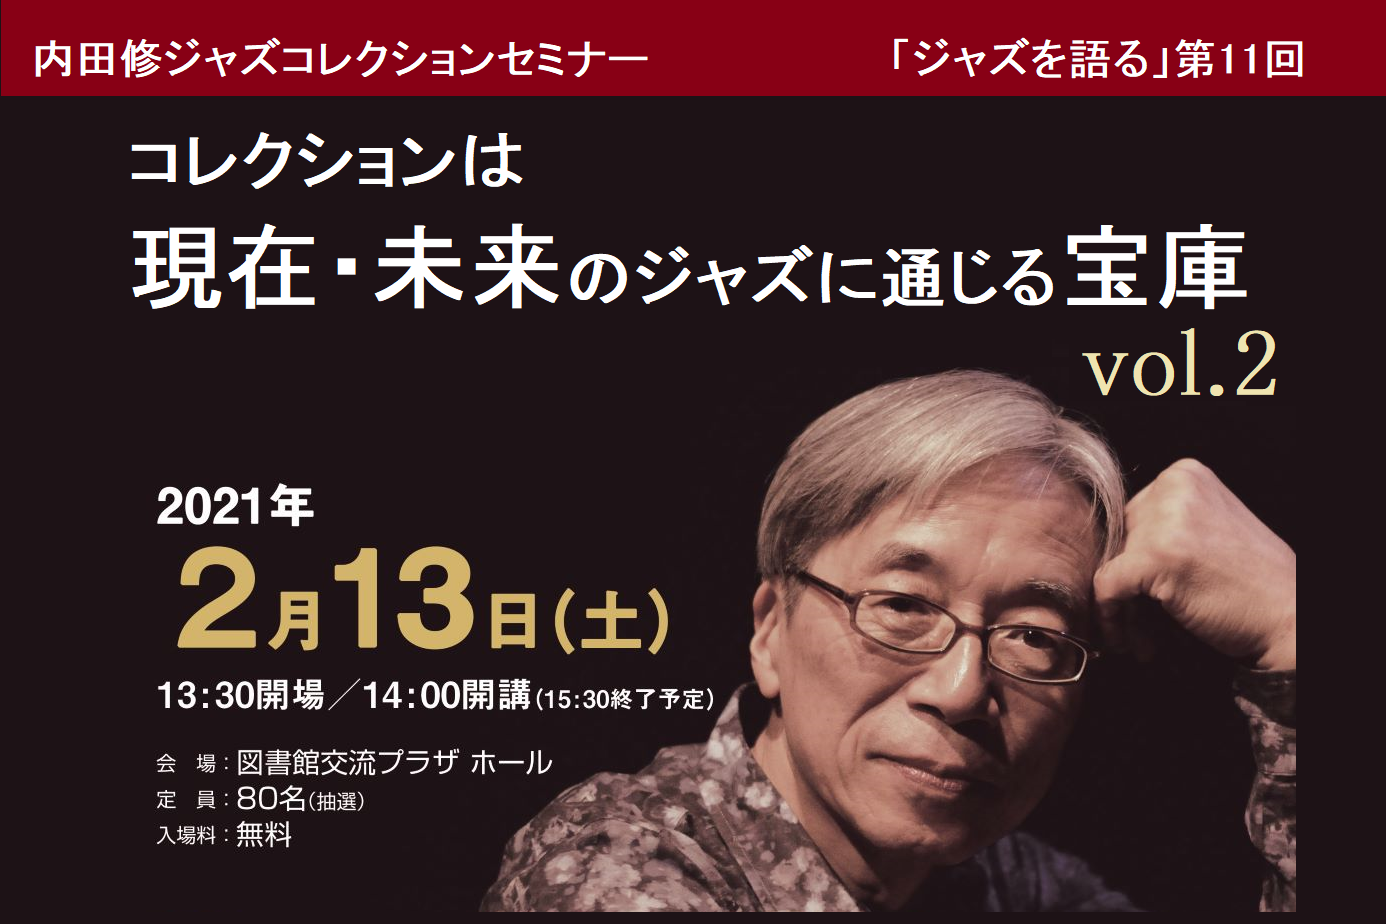 内田修ジャズコレクションセミナー「ジャズを語る」